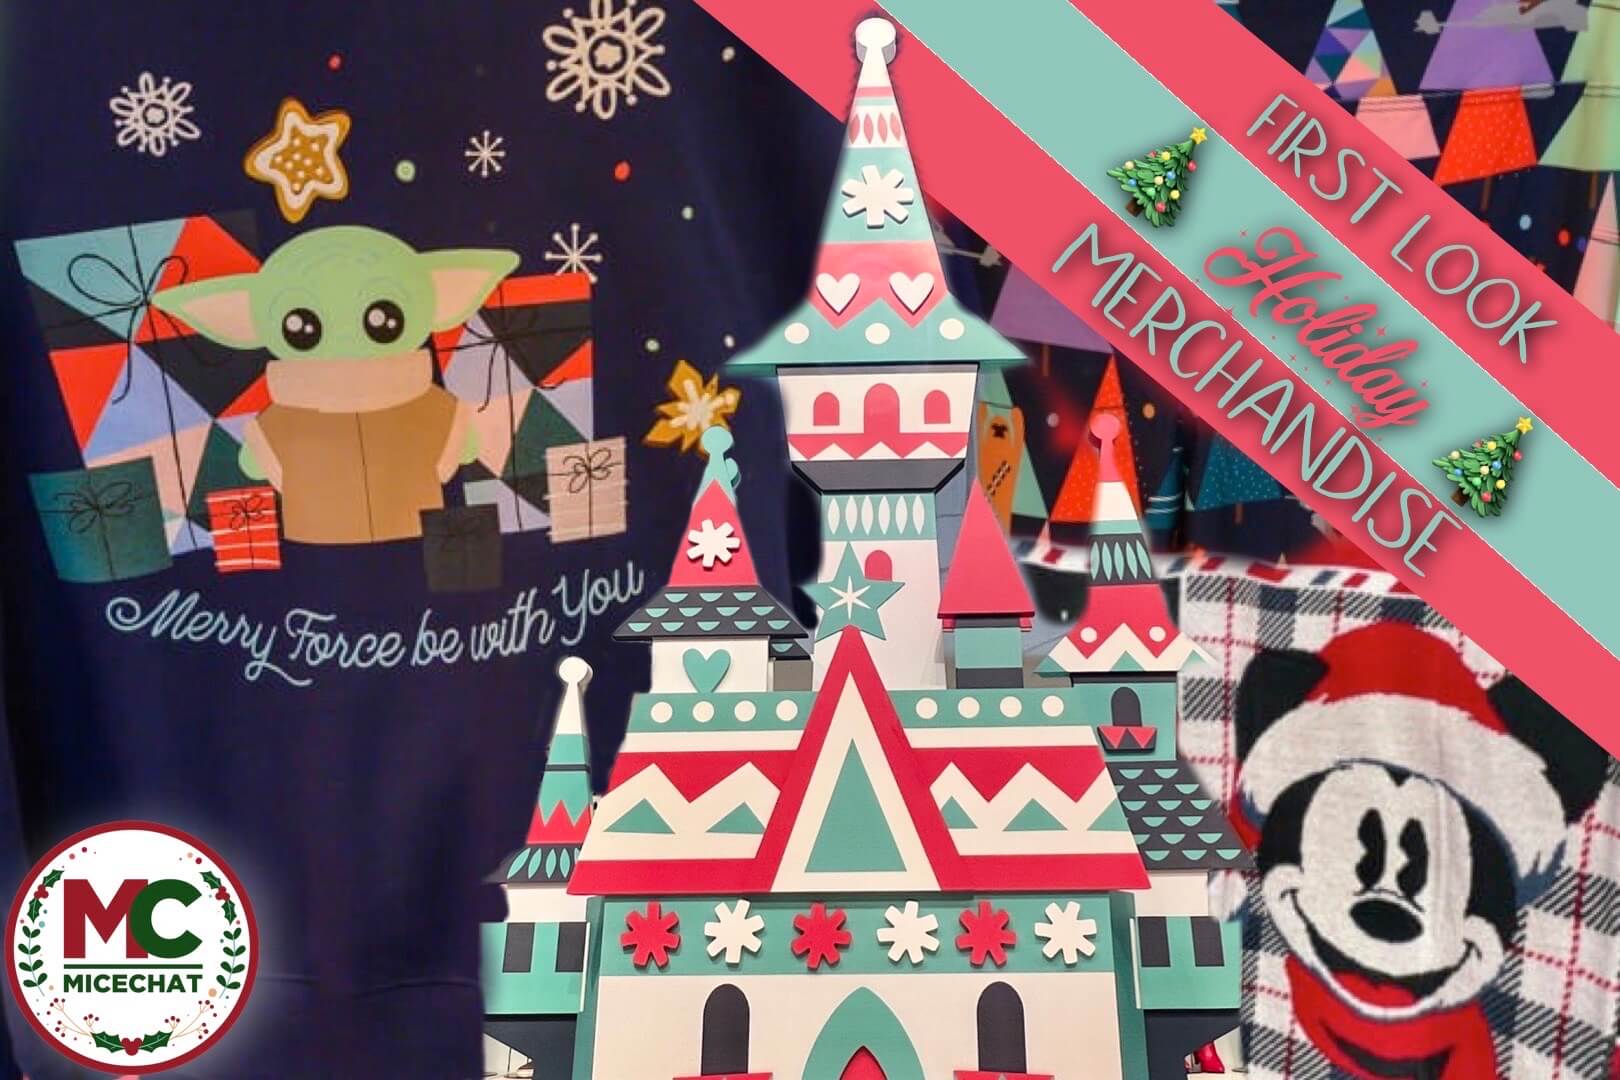 Sneak peek at Disneyland's 2022 Holiday Merchandise